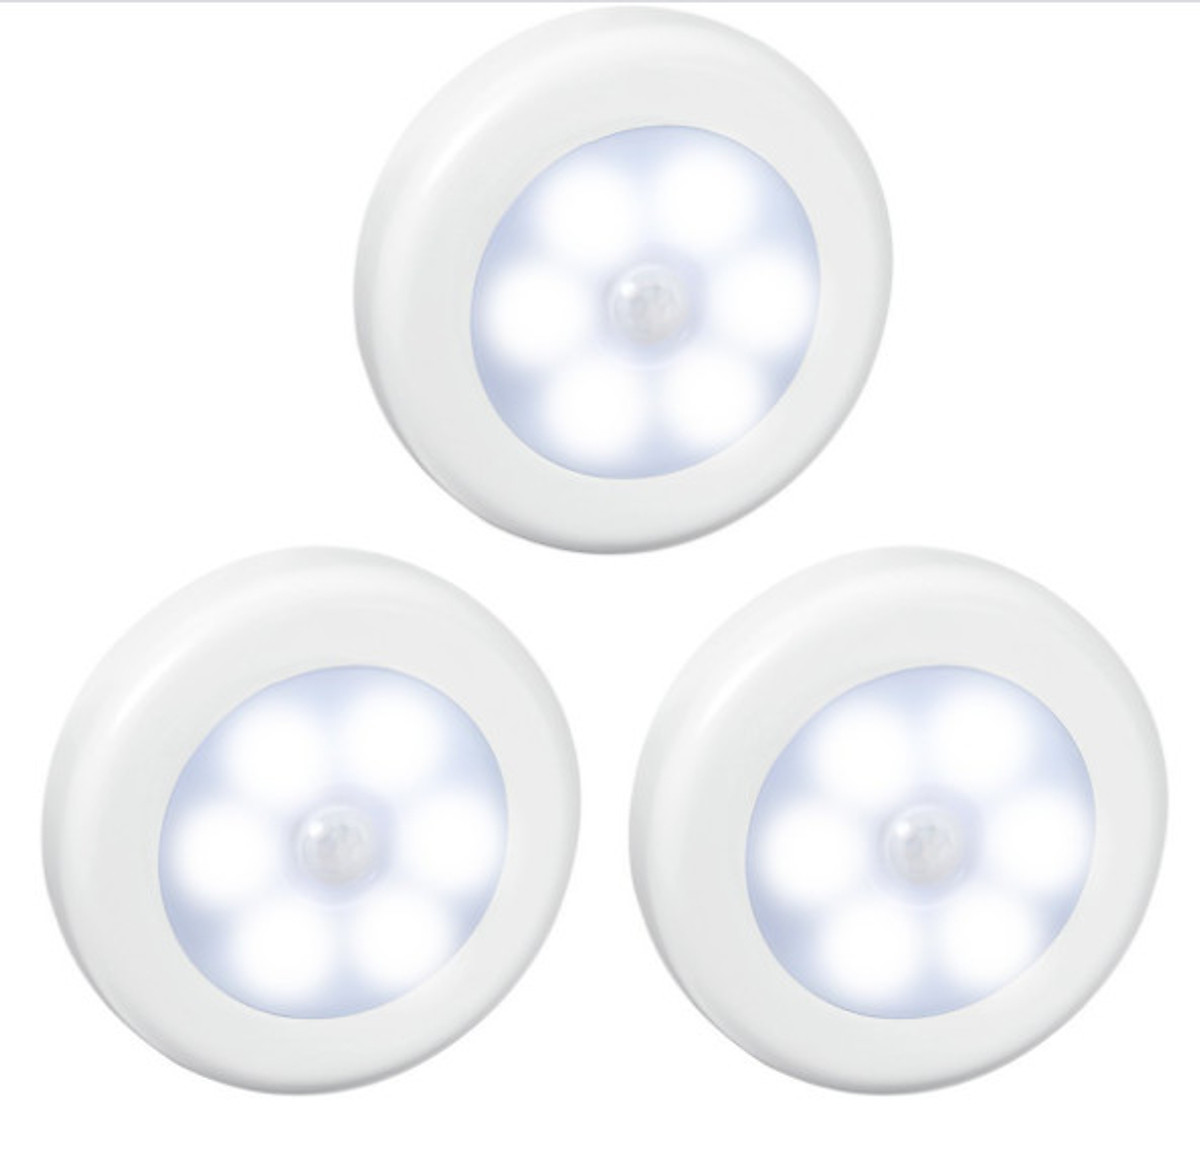 Đèn LED cảm ứng thông minh  mini hình tròn -Hàng nhập khẩu